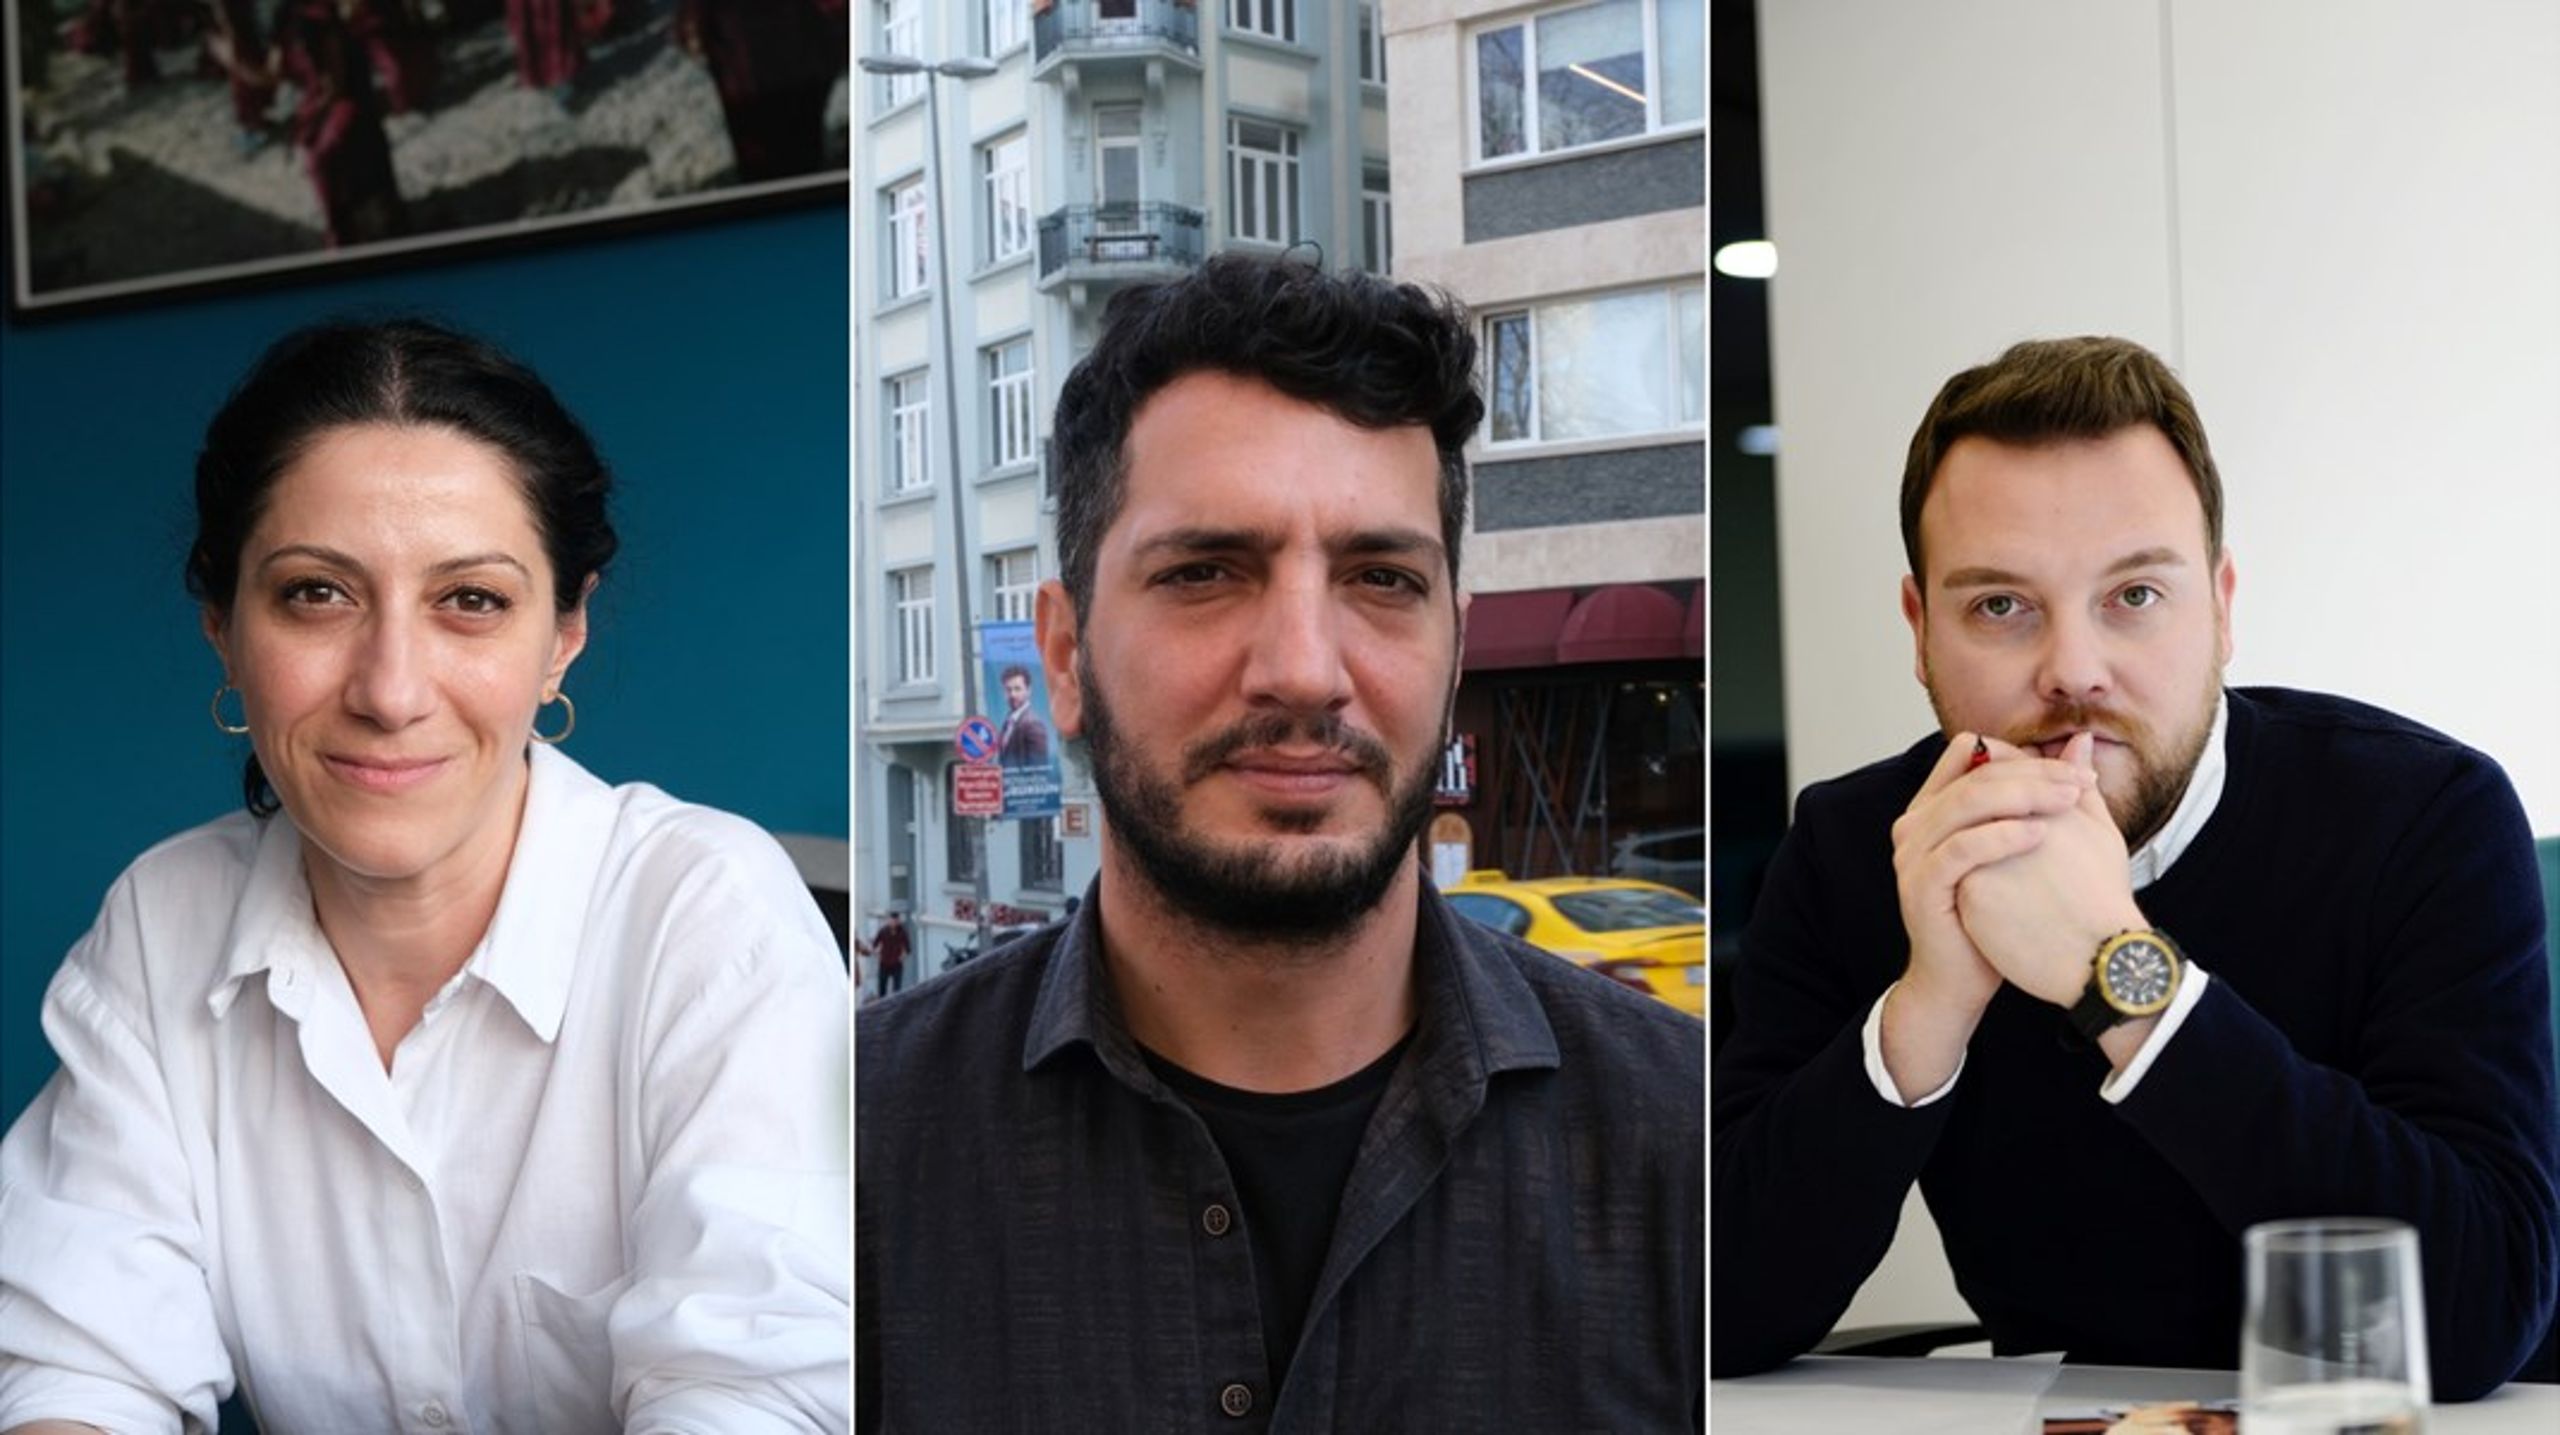 Banu Tuna, Veysel Ok och Mustafa
Kuleili&nbsp;hoppas alla på en ljusare framtid för pressfrihet,
demokrati och yttrandefrihet efter det turkiska valet i maj. 